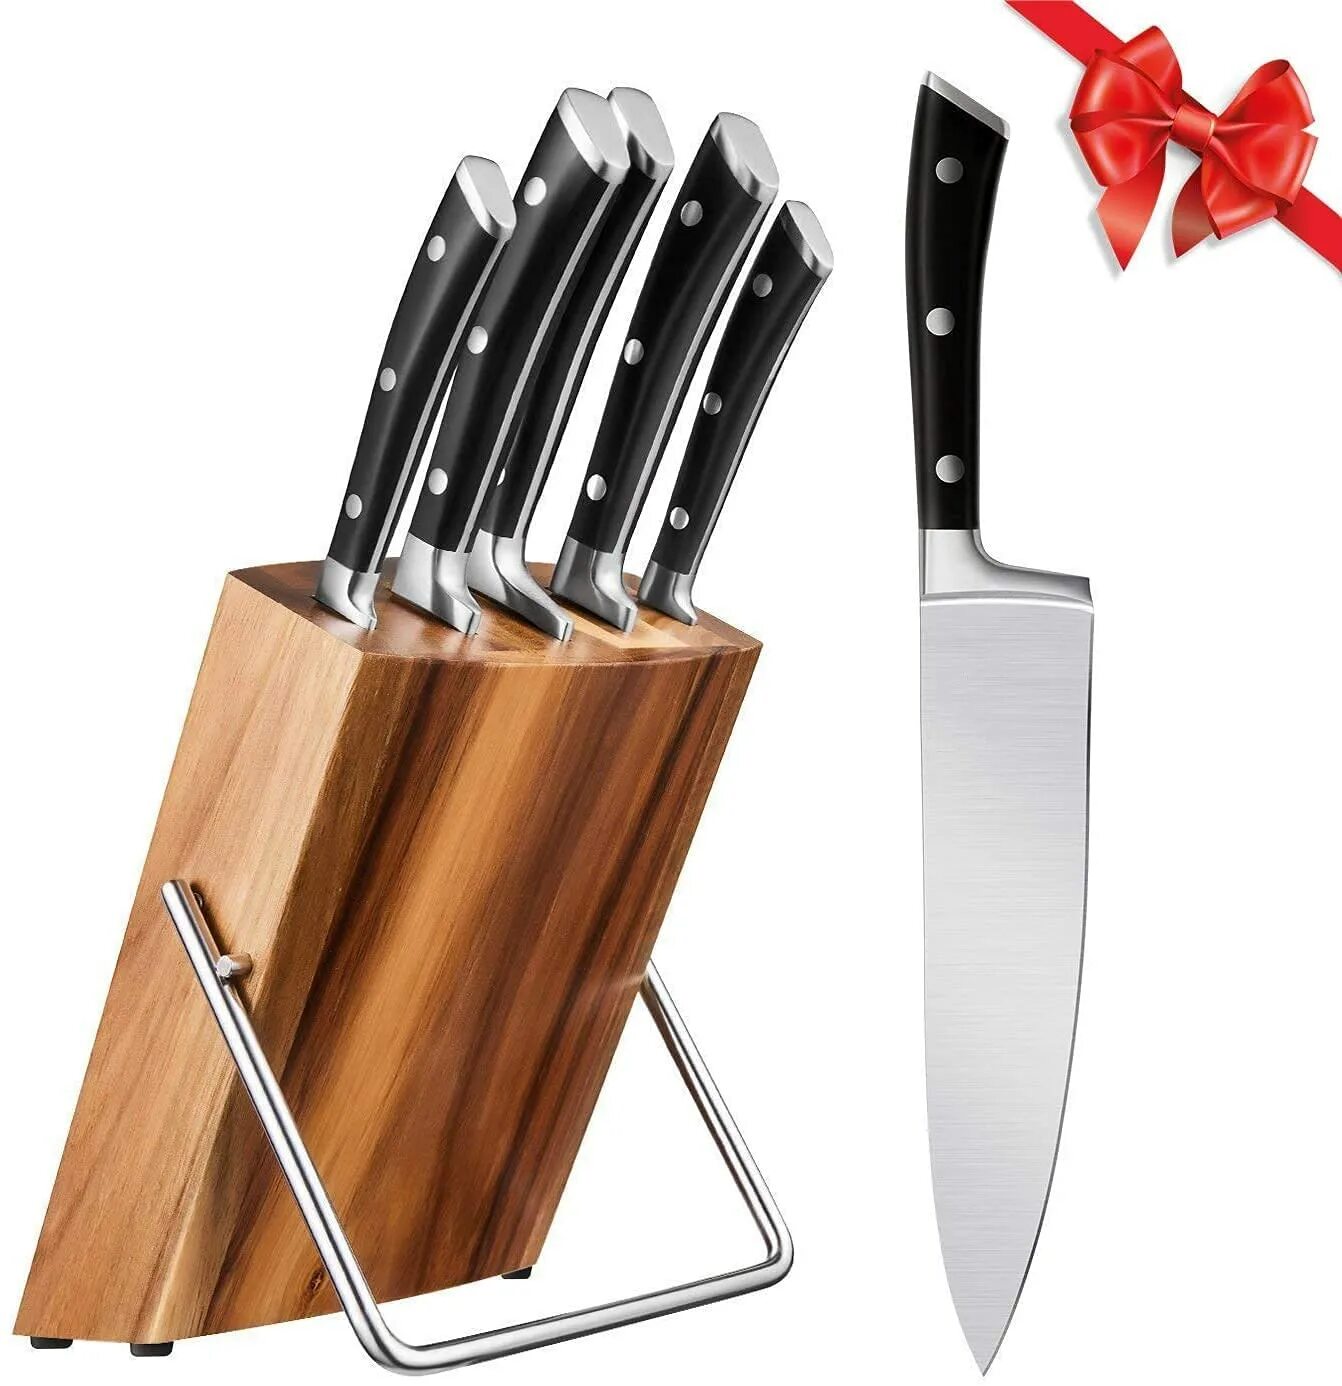 Кухонный нож из нержавеющей стали. Набор ножей Книфе сет. Cutlery Stainless Steel кухонный нож. Ножи Kitchen Knife Stainless Steel. Набор ножей Kitchen Knife 5p.